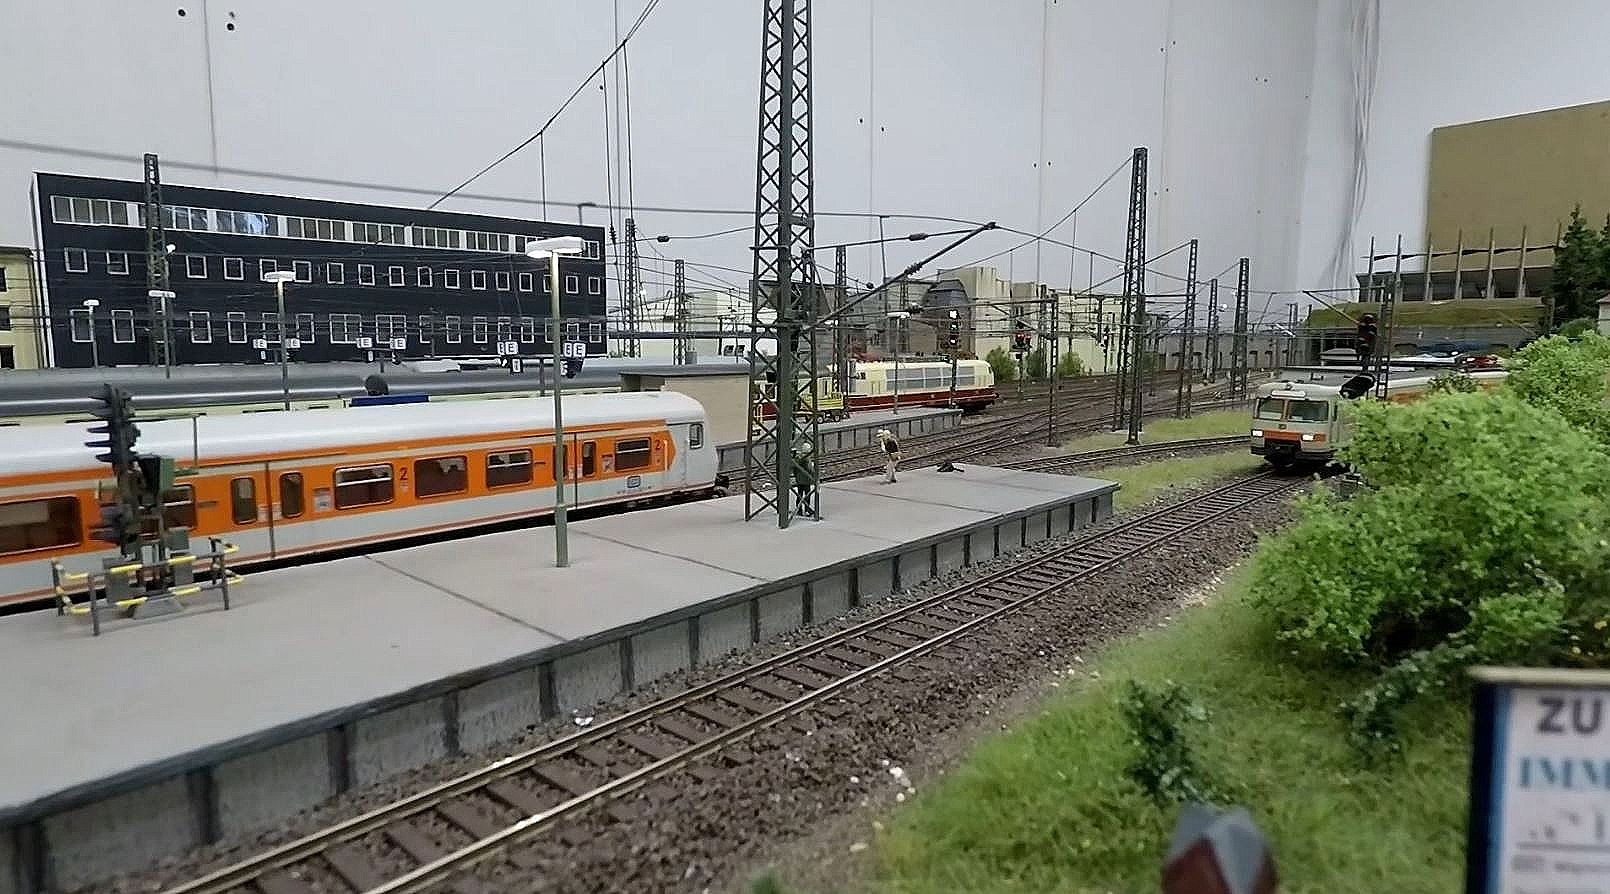 Modellbahn H0 - Anlagenvorstellung der Kolketalbahn und des Bahnhofs Emathal